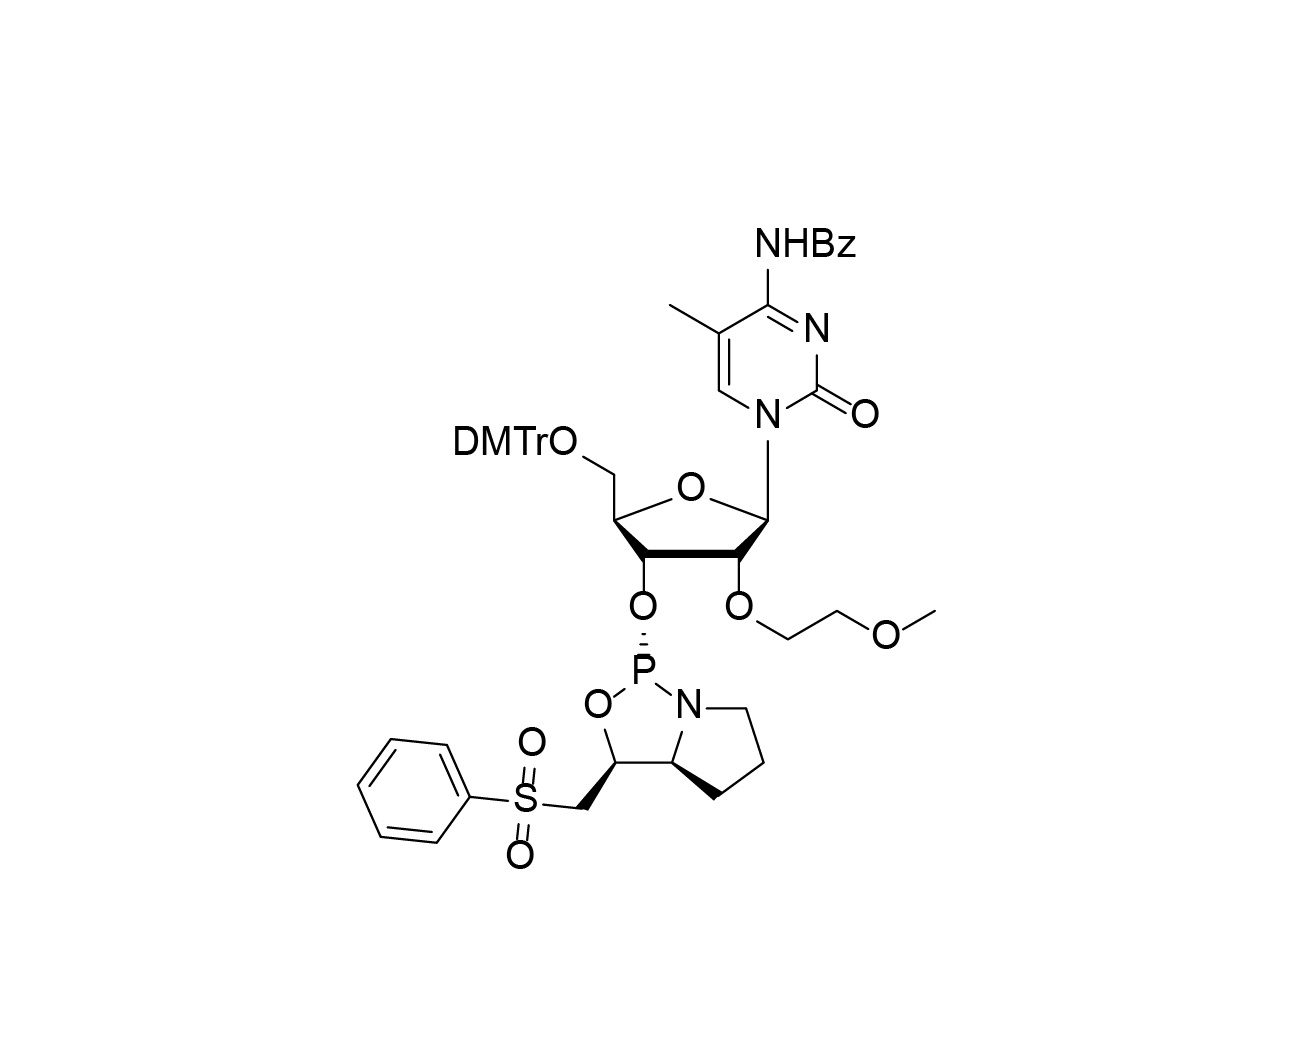 DMTr-2'-O-MOE-5-Me-rC(Bz)-3'-(L)-PSM-Phosphoramidite